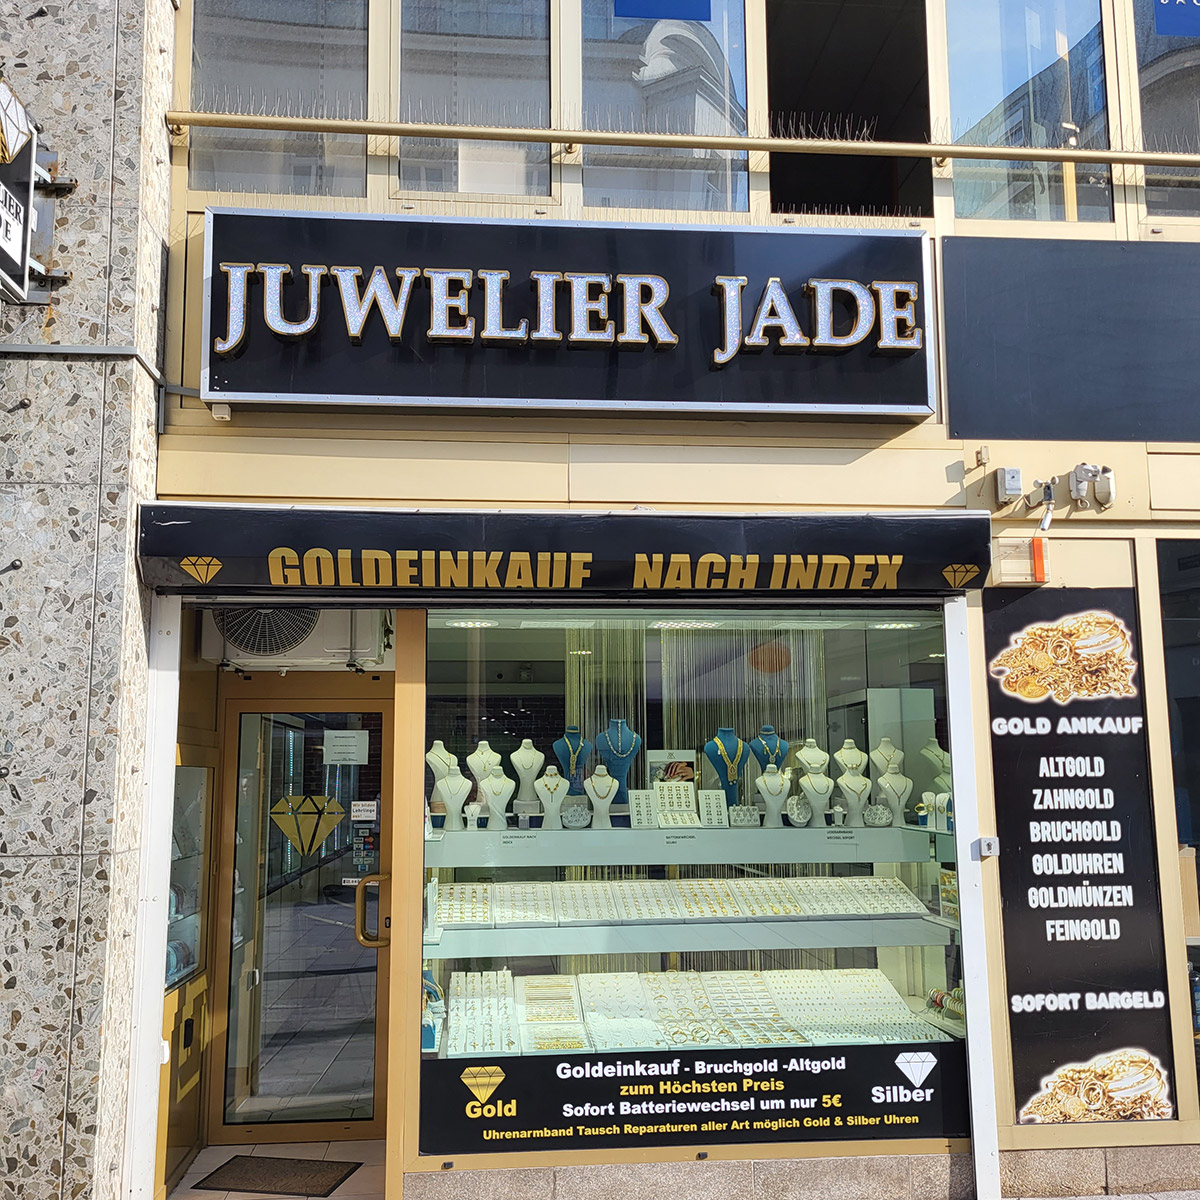 Juwelier Jade